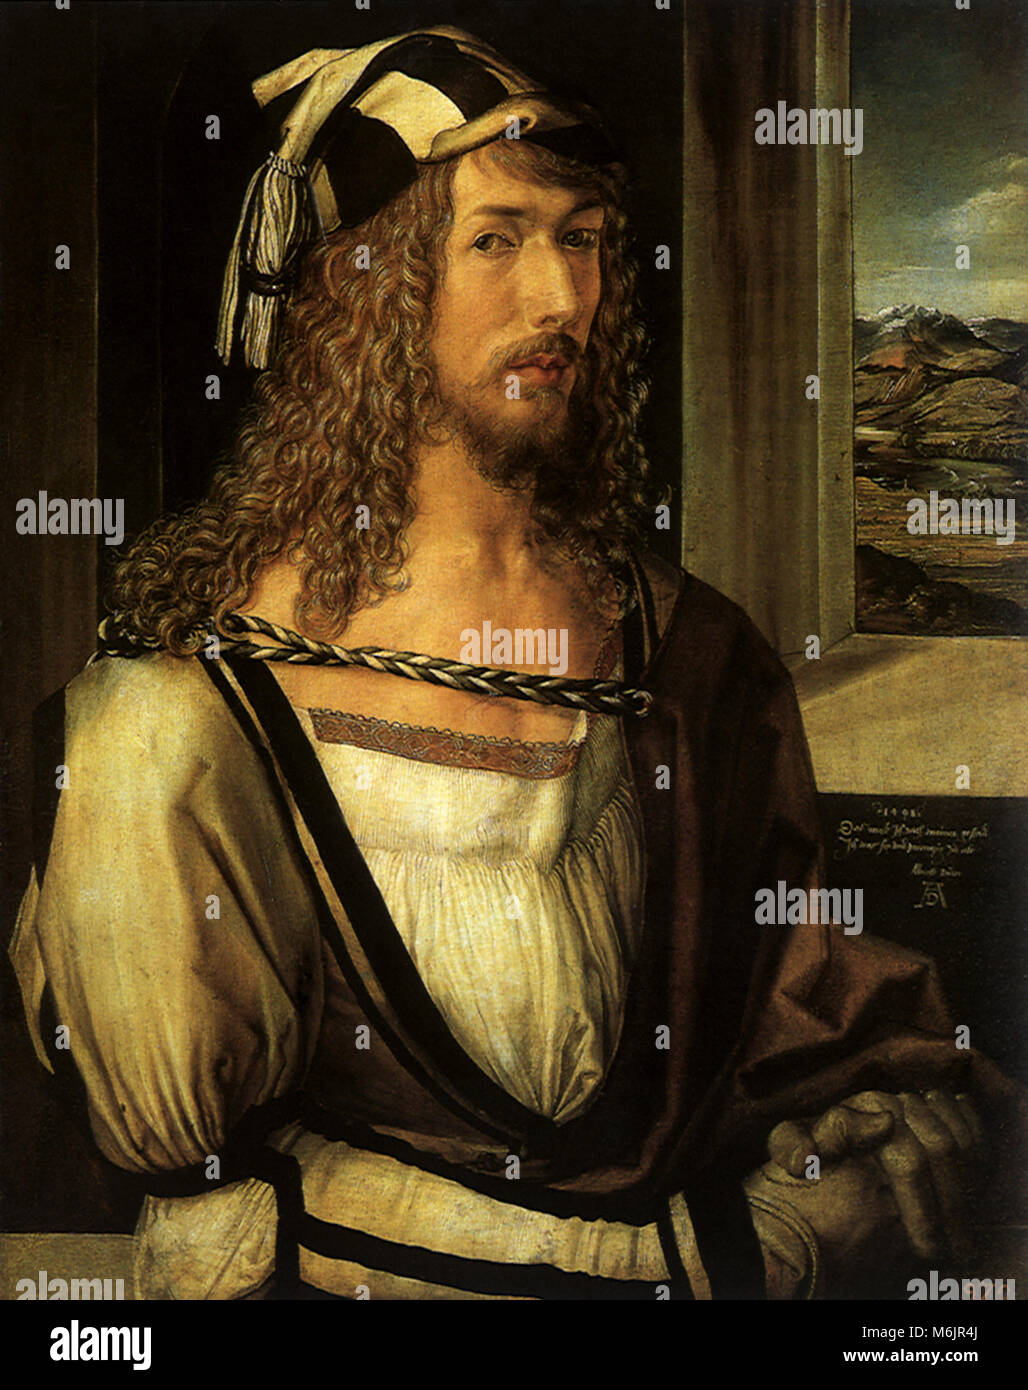 Self Portrait of Durer, Durer, Albrecht, 1498. Stock Photo